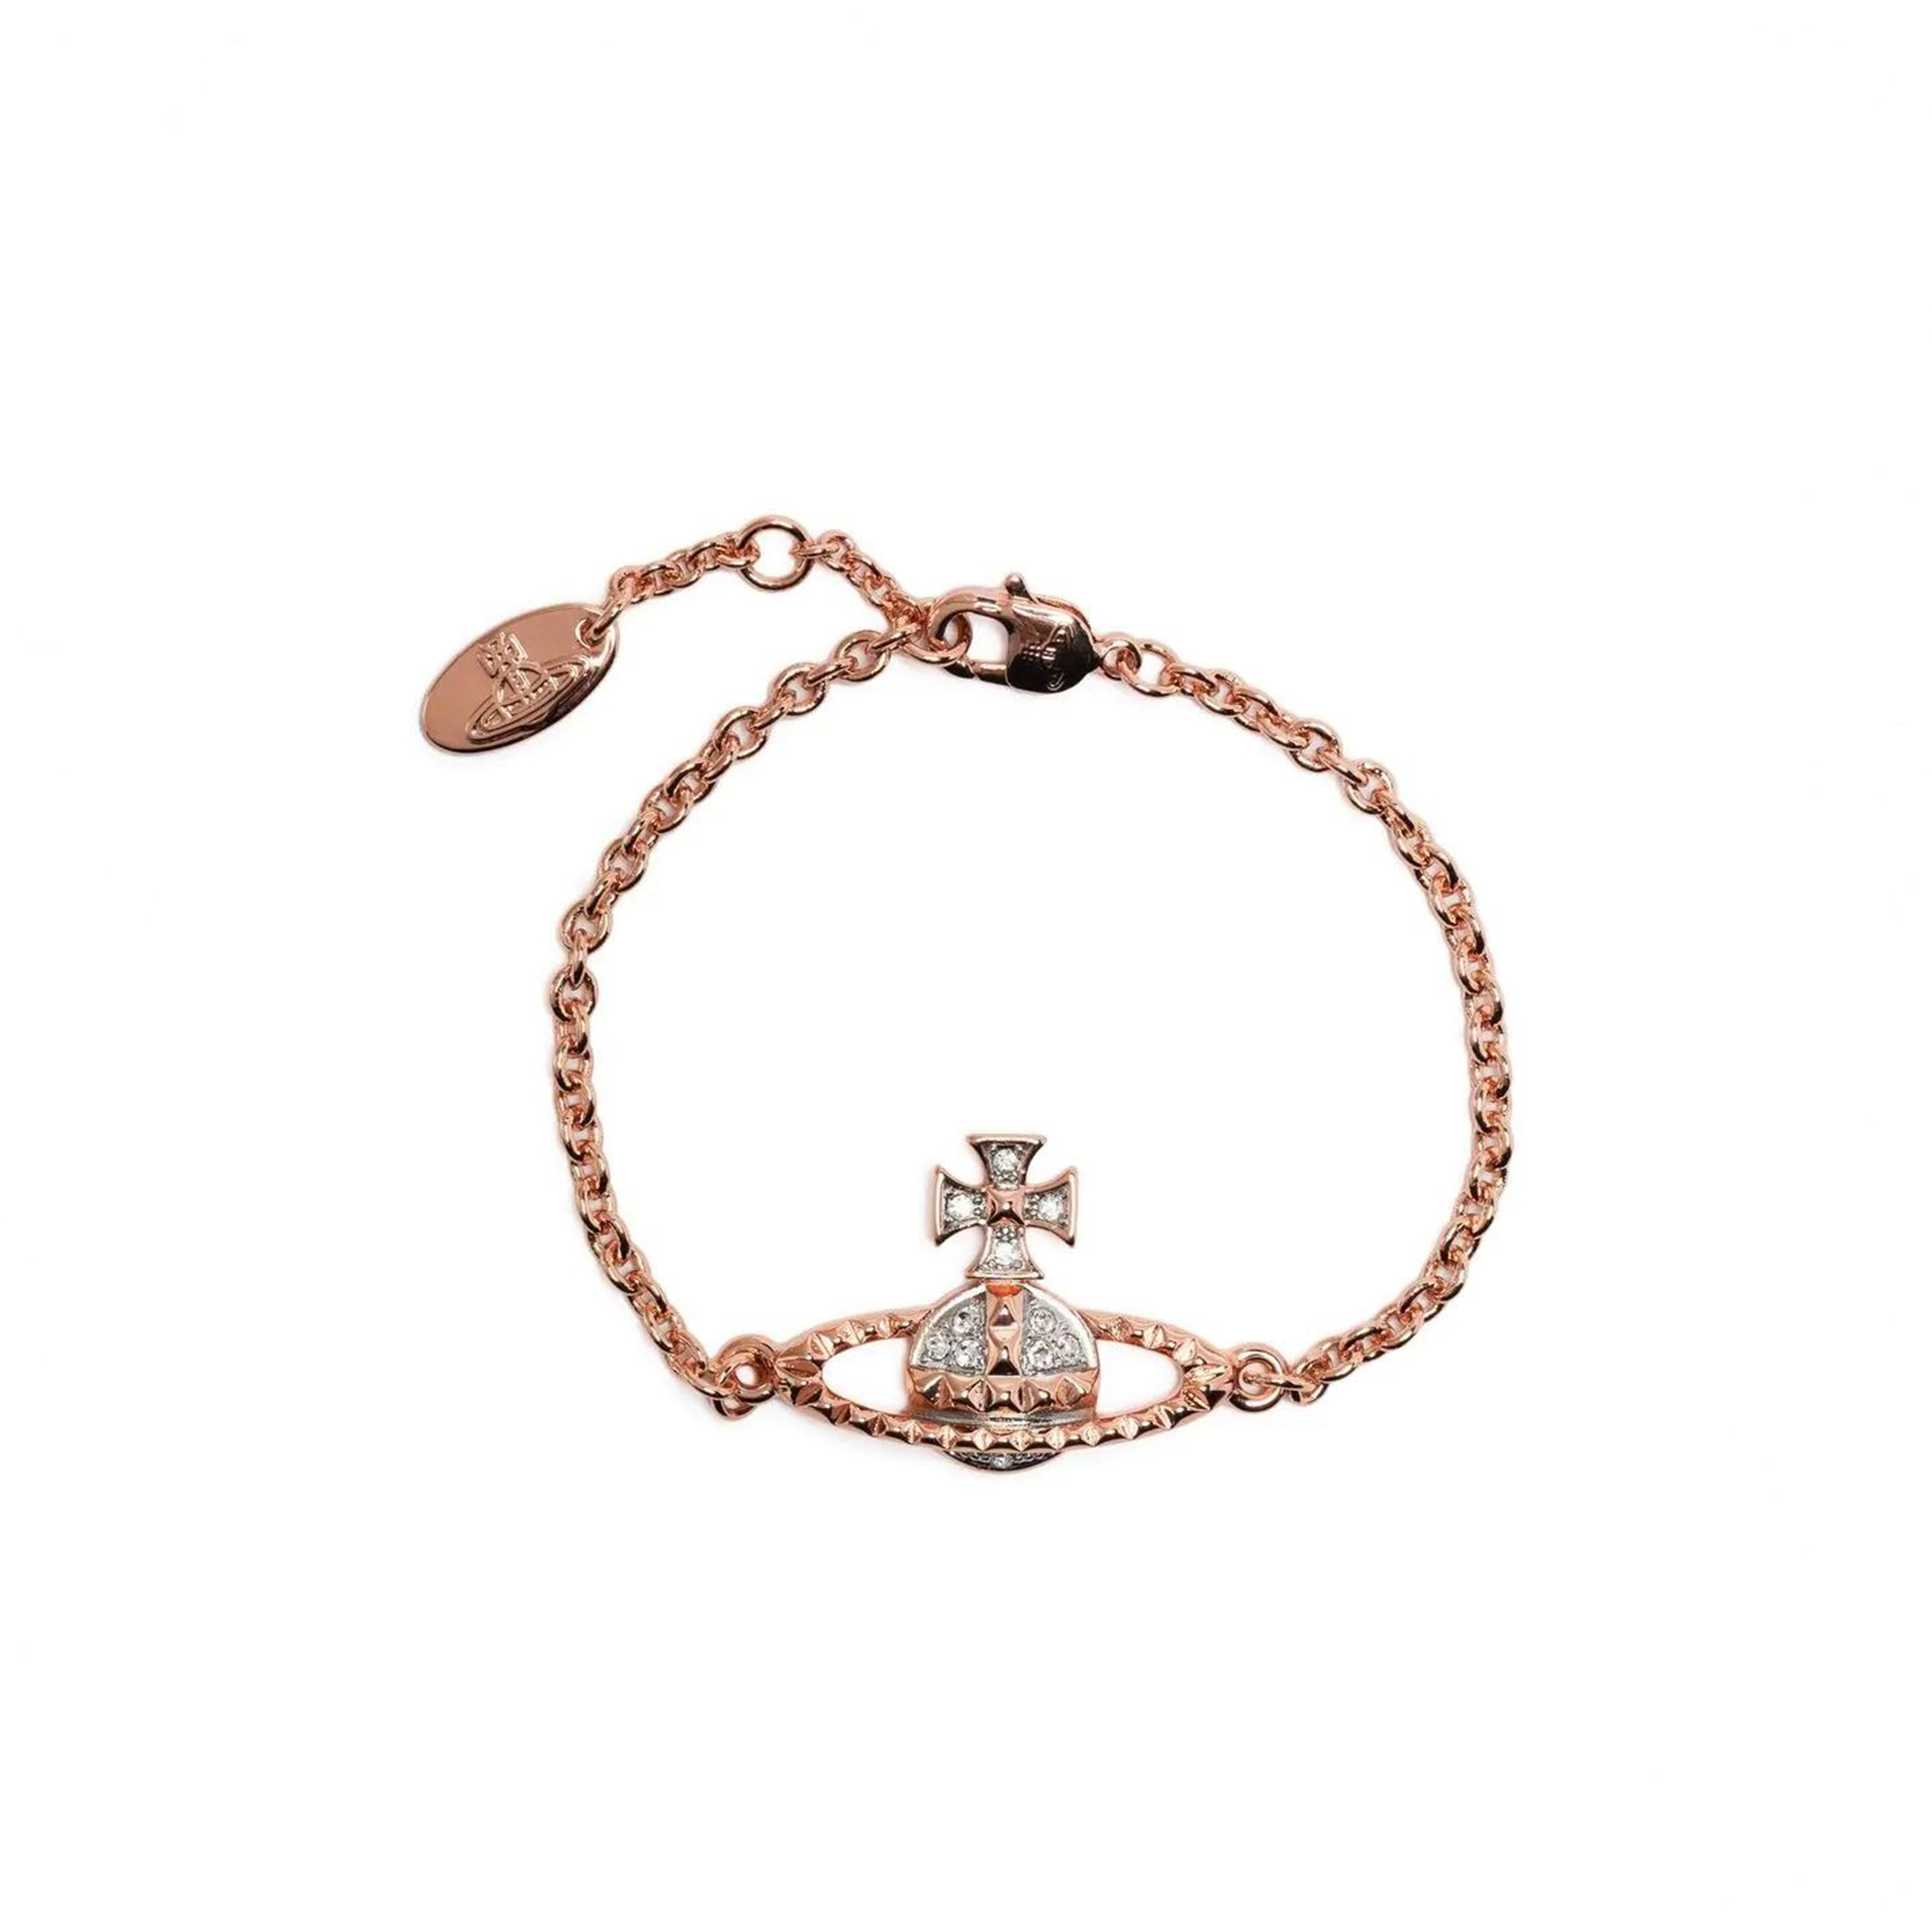 Louis Vuitton Petite malle charm bracelet (M8011F, M8011F)